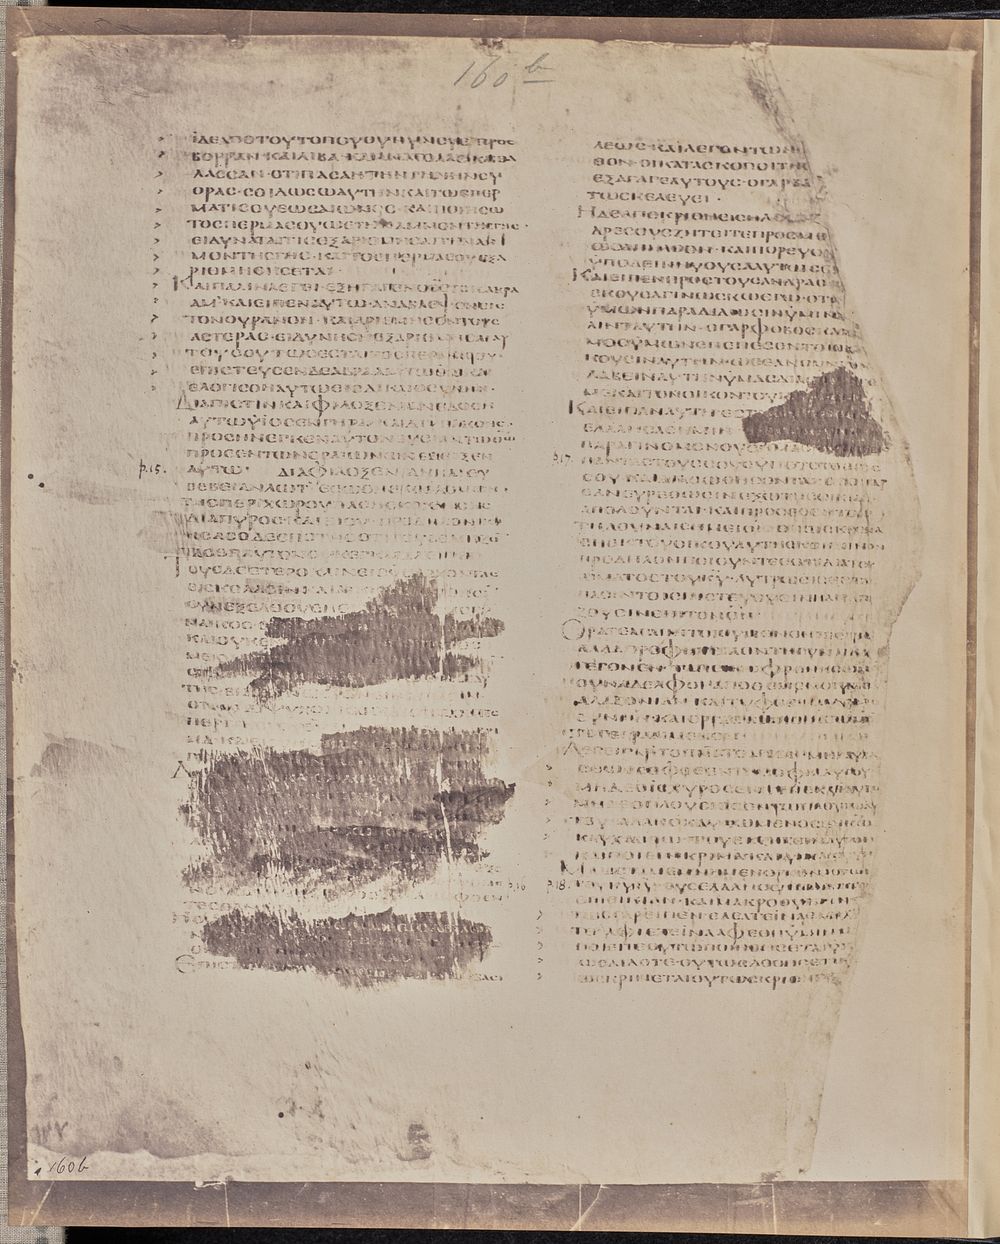 Folio 160, Verso by Roger Fenton